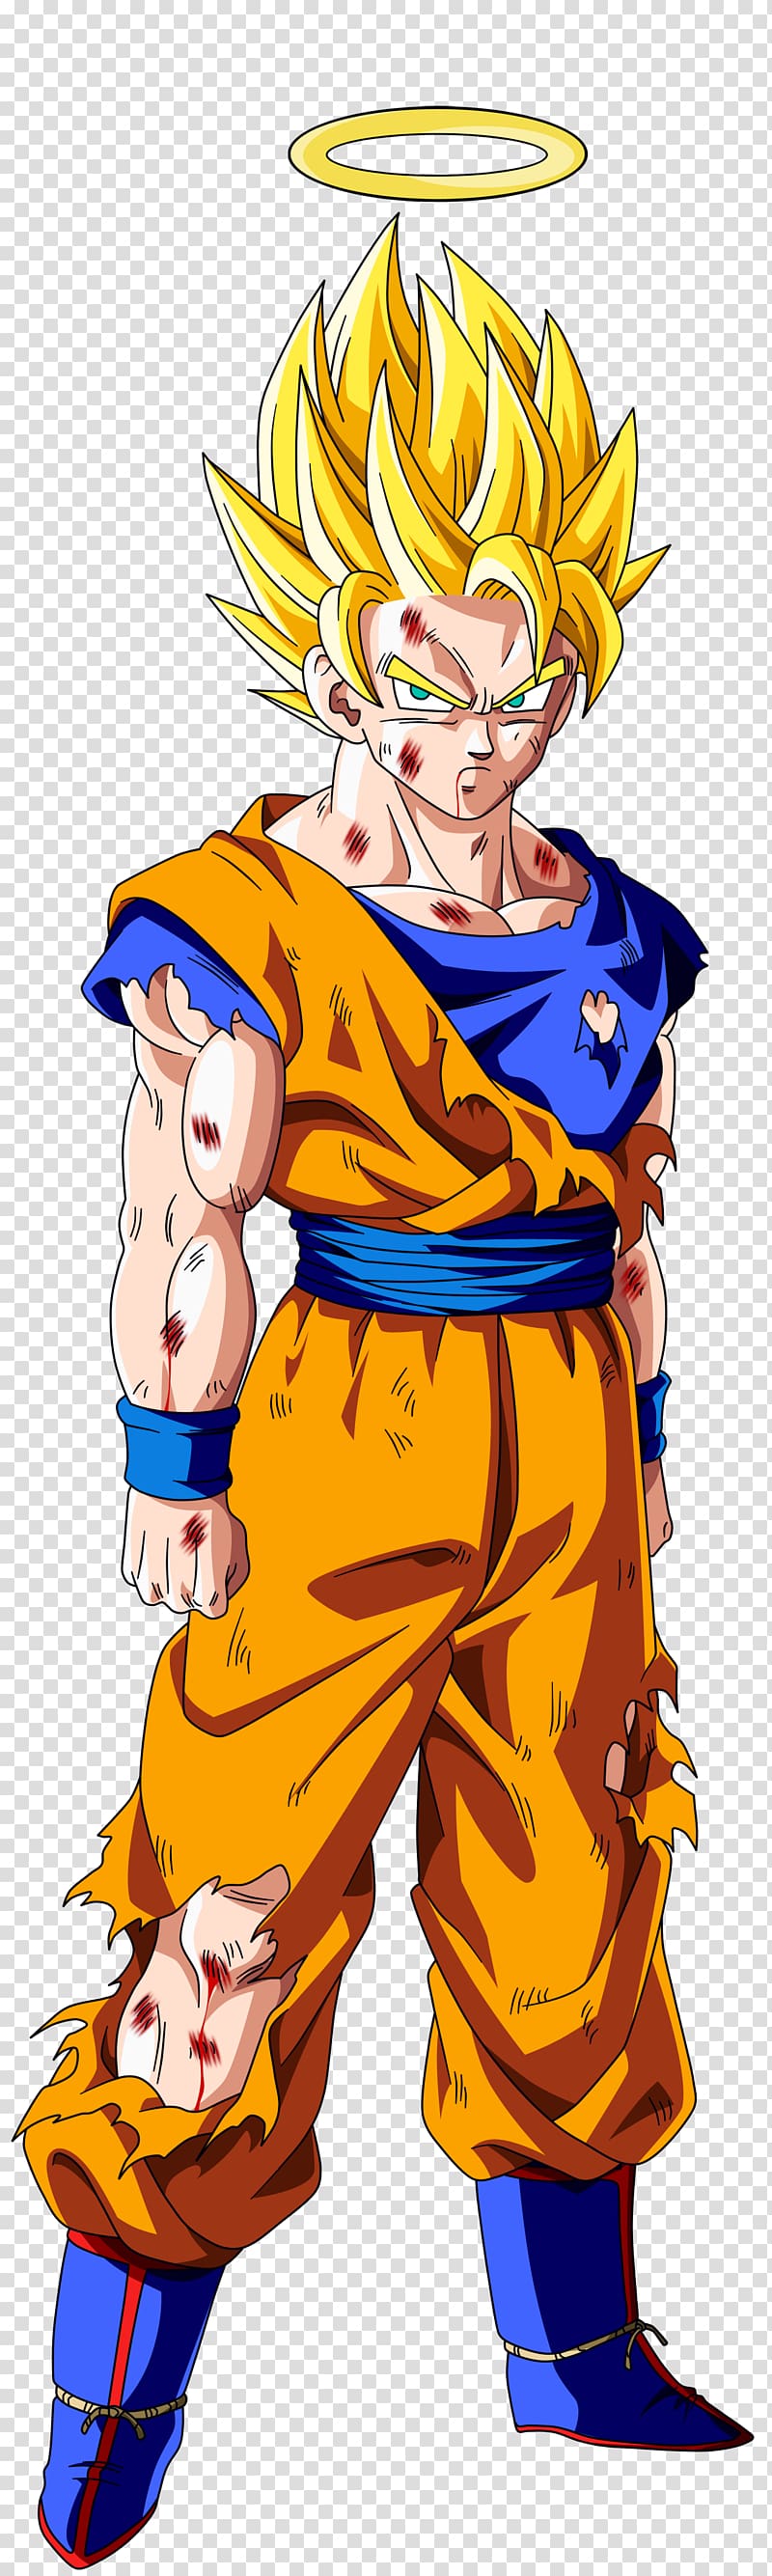 Goku SSJ Blue v, Son Guko character transparent background PNG